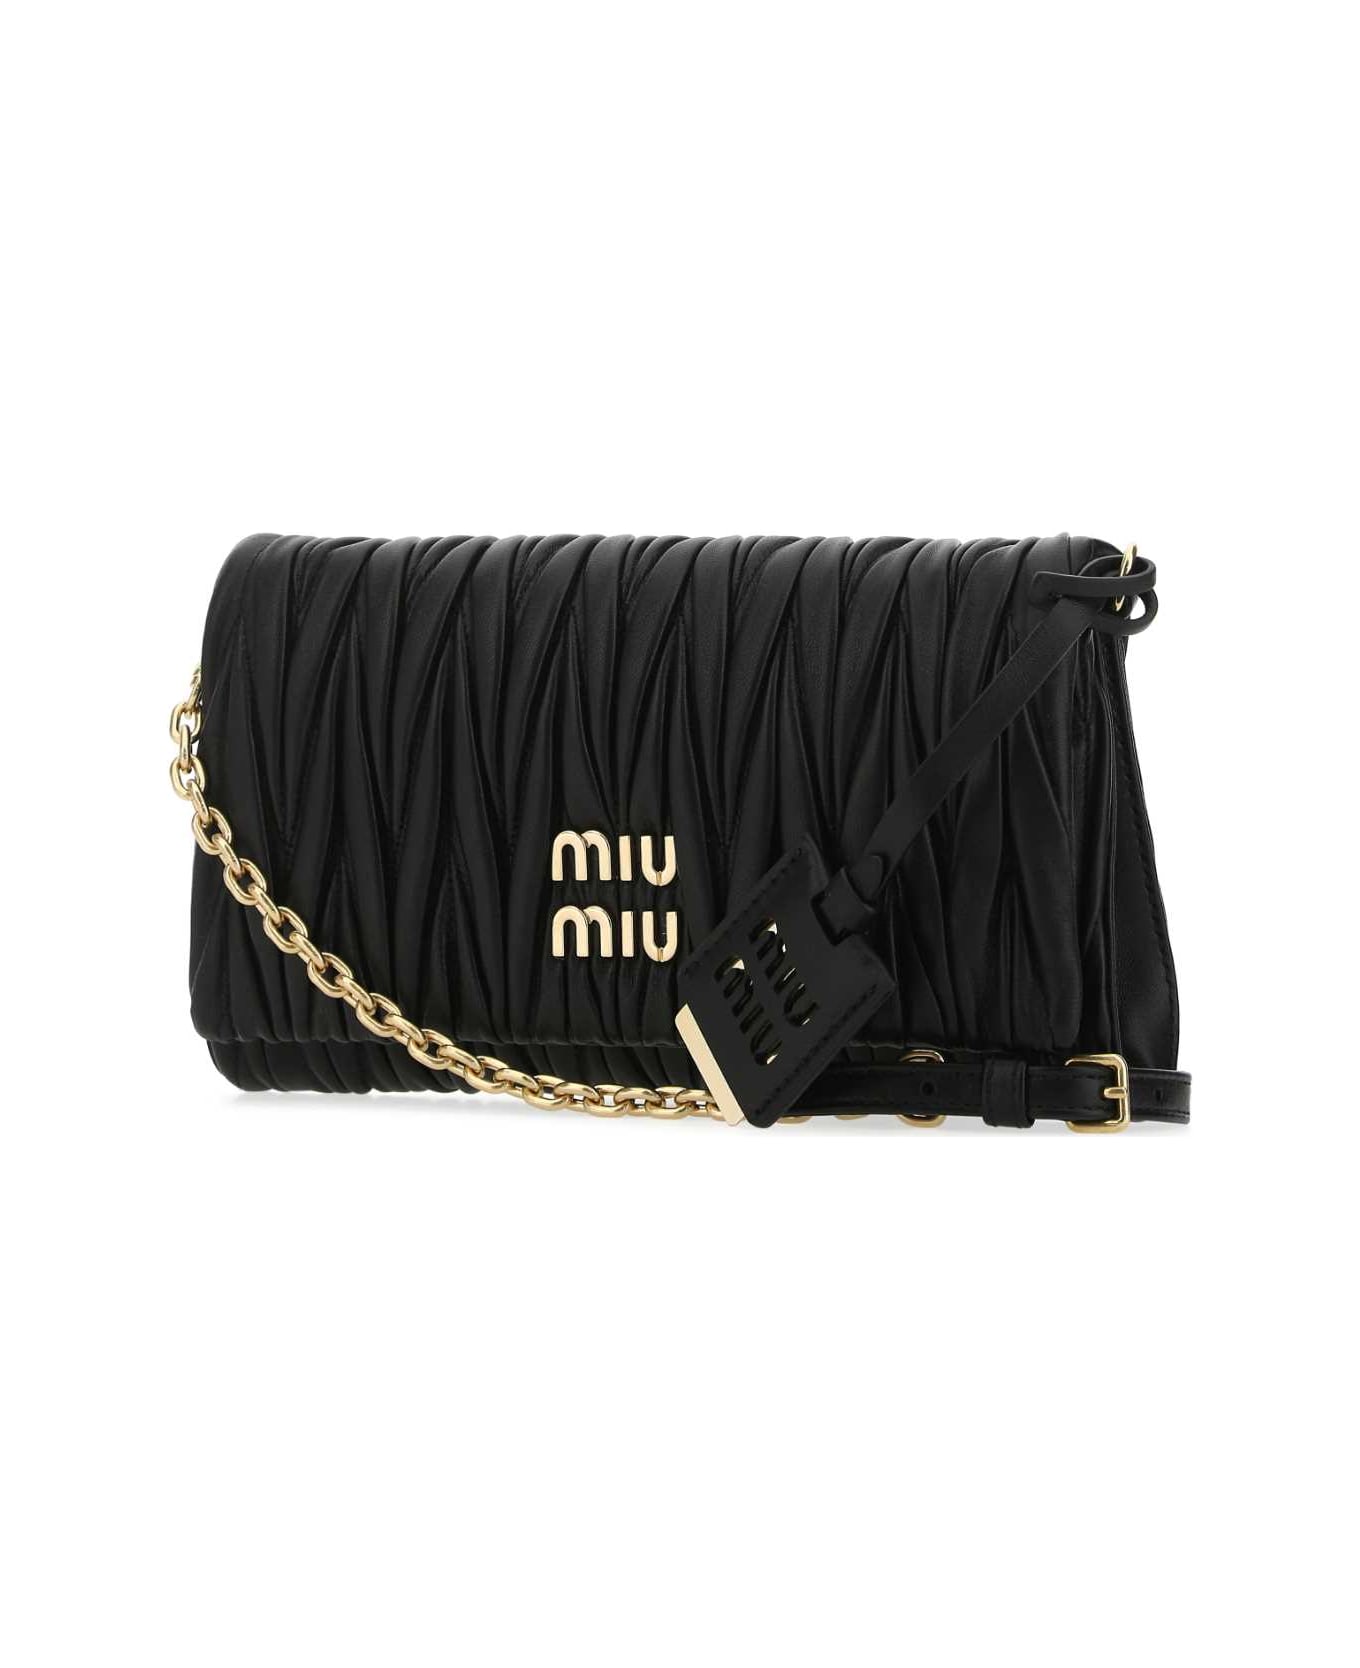 Miu Miu Black Nappa Leather Clutch - F0002